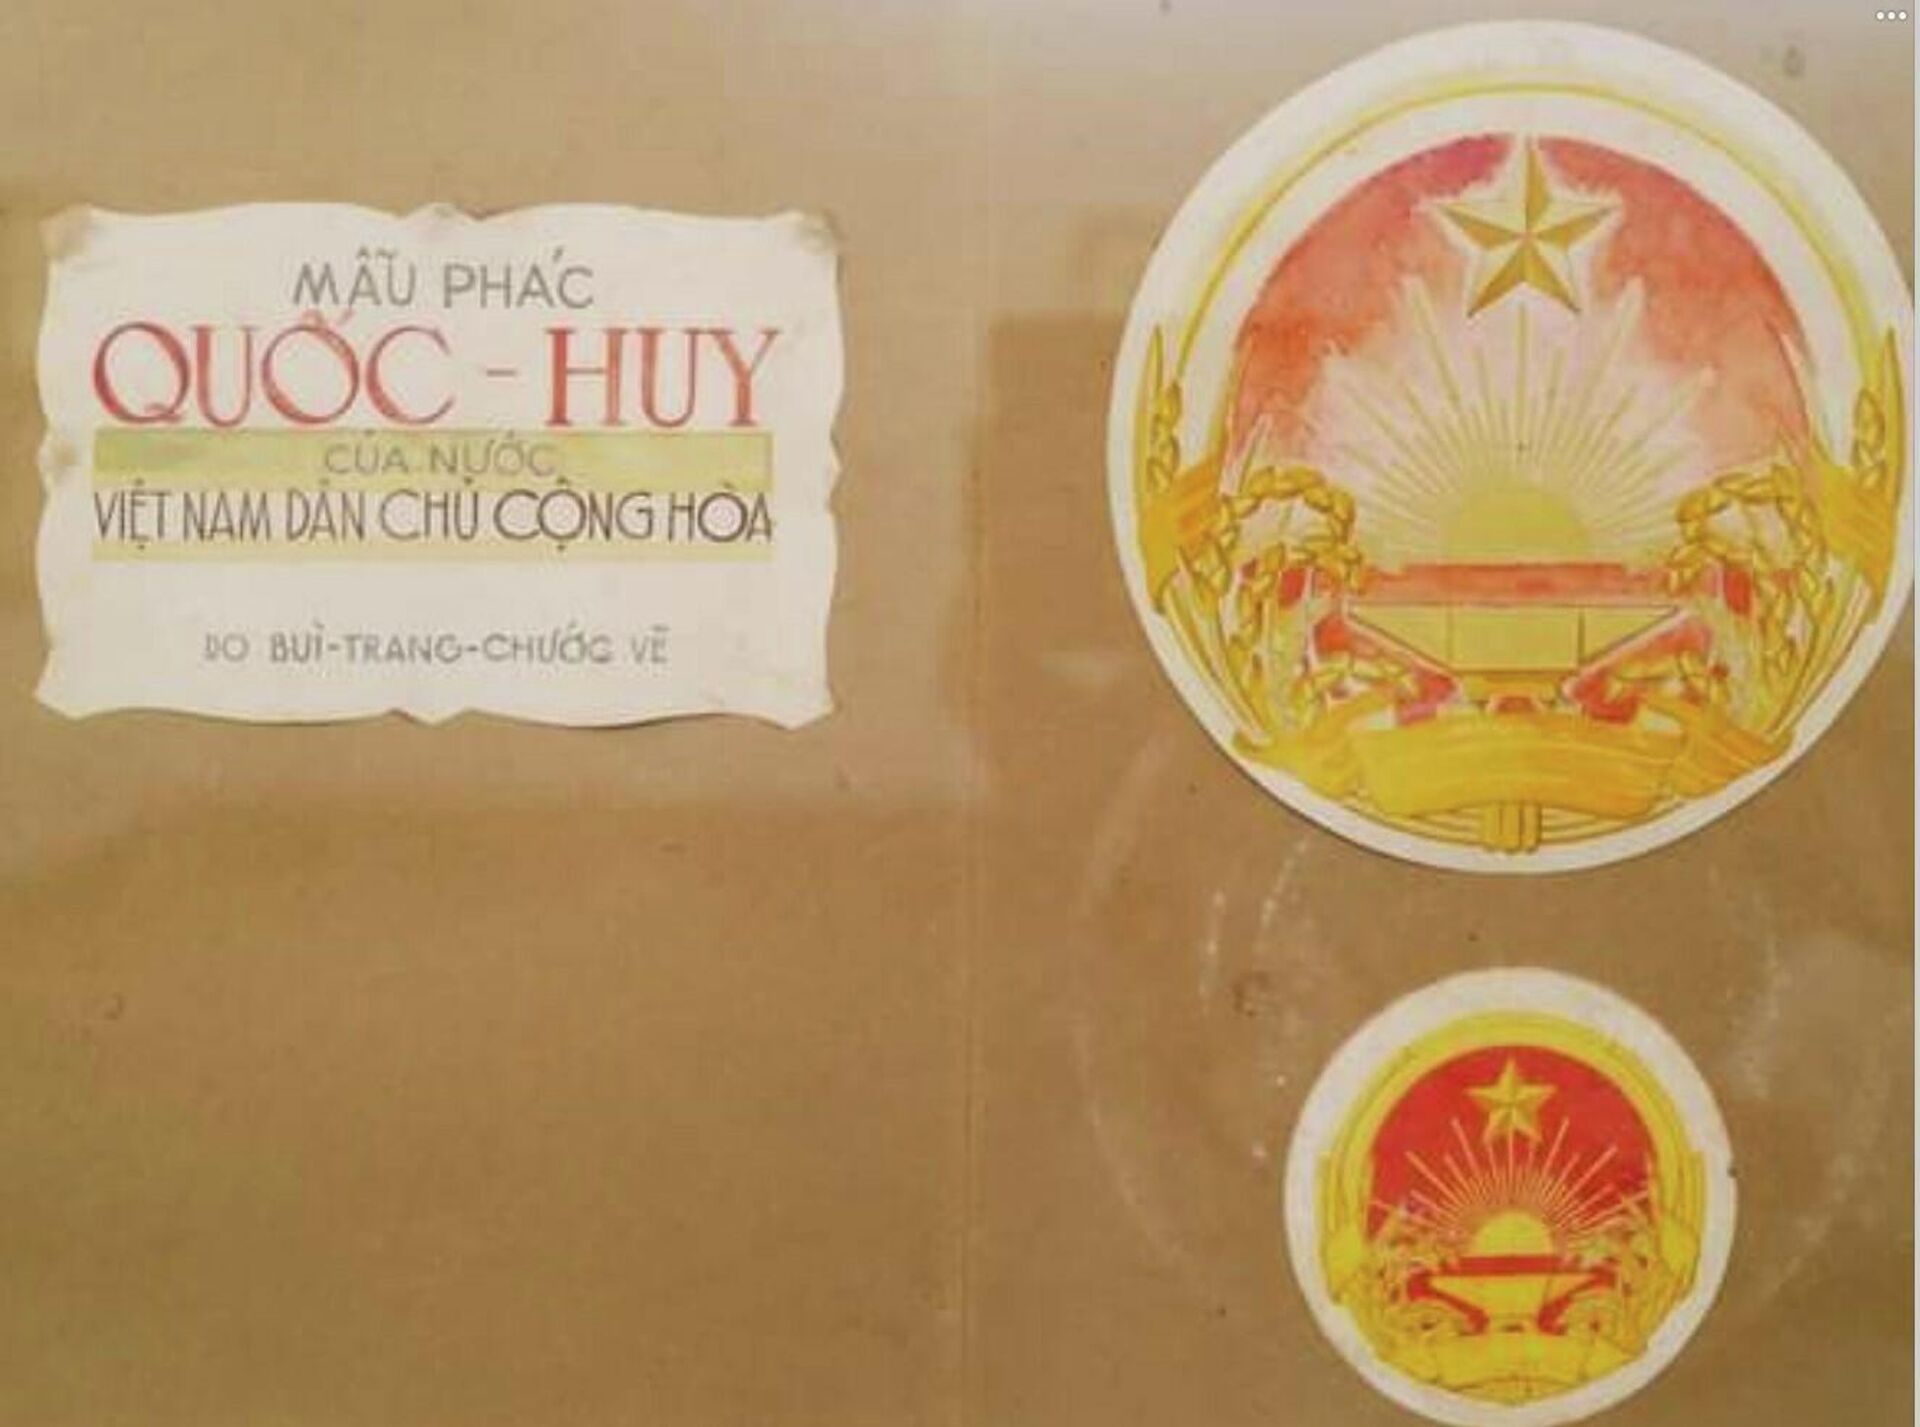 Bộ sưu tập bản phác thảo mẫu Quốc huy Việt Nam của họa sĩ Bùi Trang Chước, được Thủ tướng công nhận là bảo vật quốc gia năm 2021 - Sputnik Việt Nam, 1920, 27.12.2021